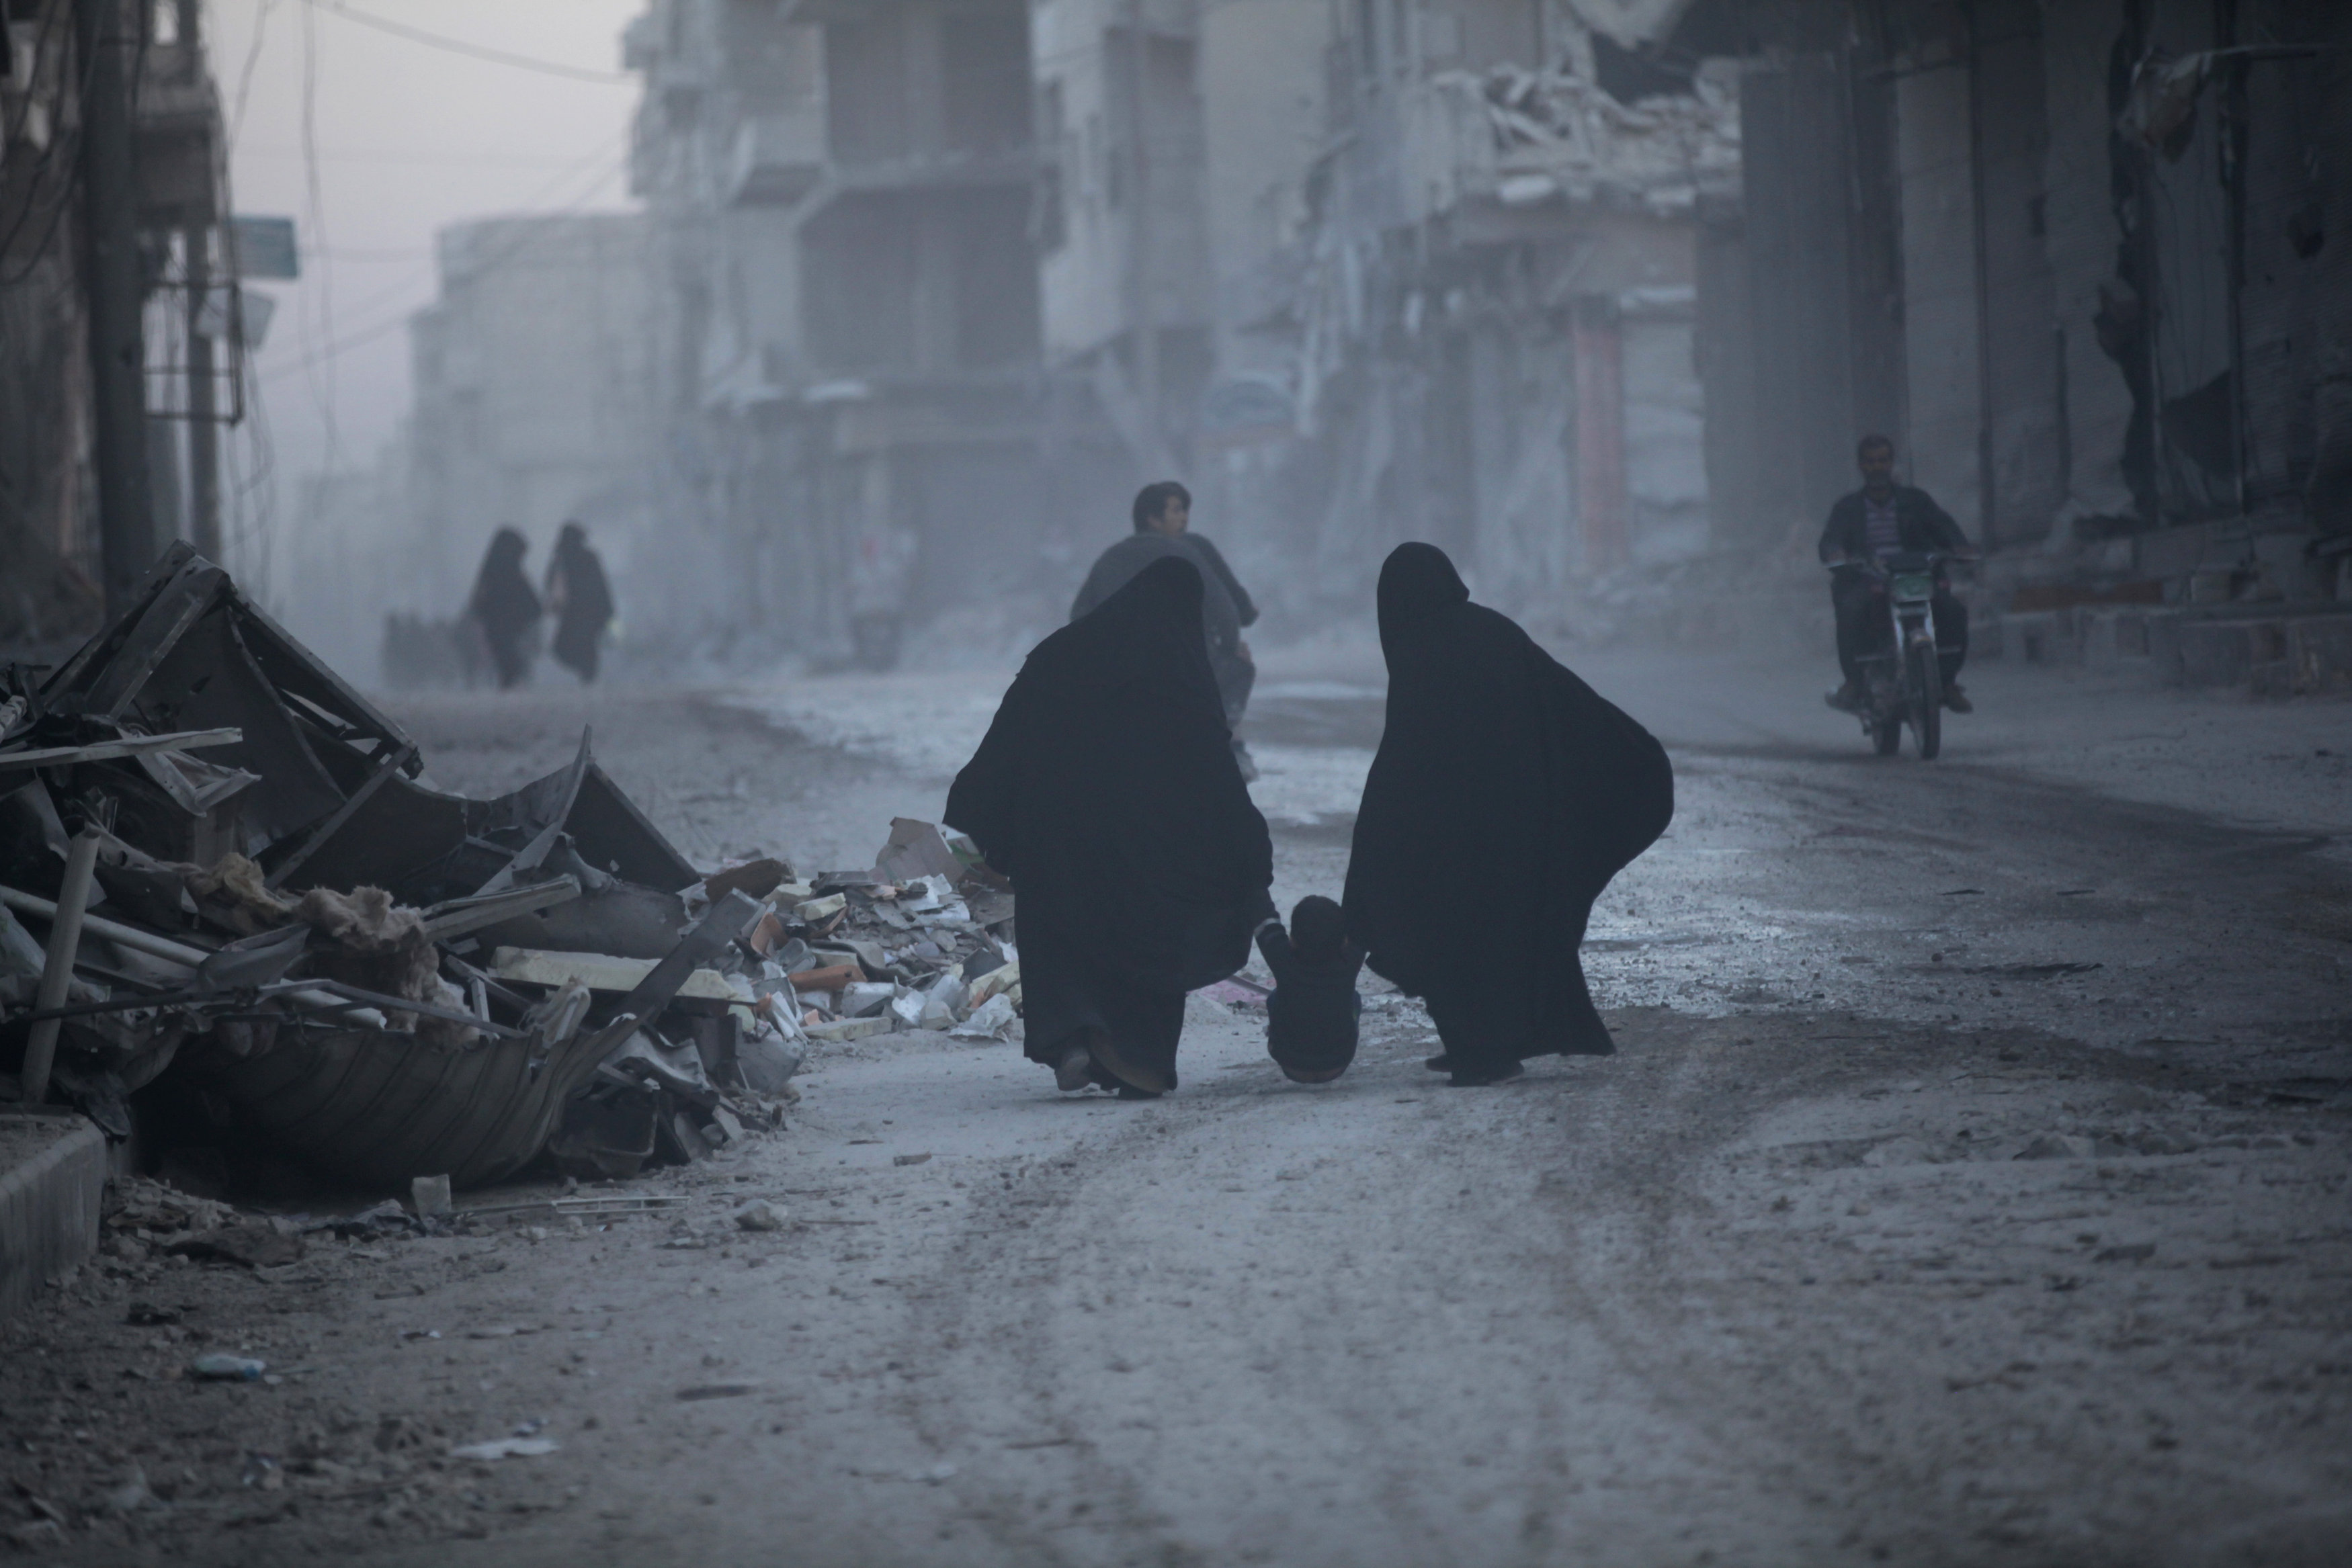 Συρία: Κατά 20 χρόνια έχει μειωθεί το προσδόκιμο ζωής από το 2011